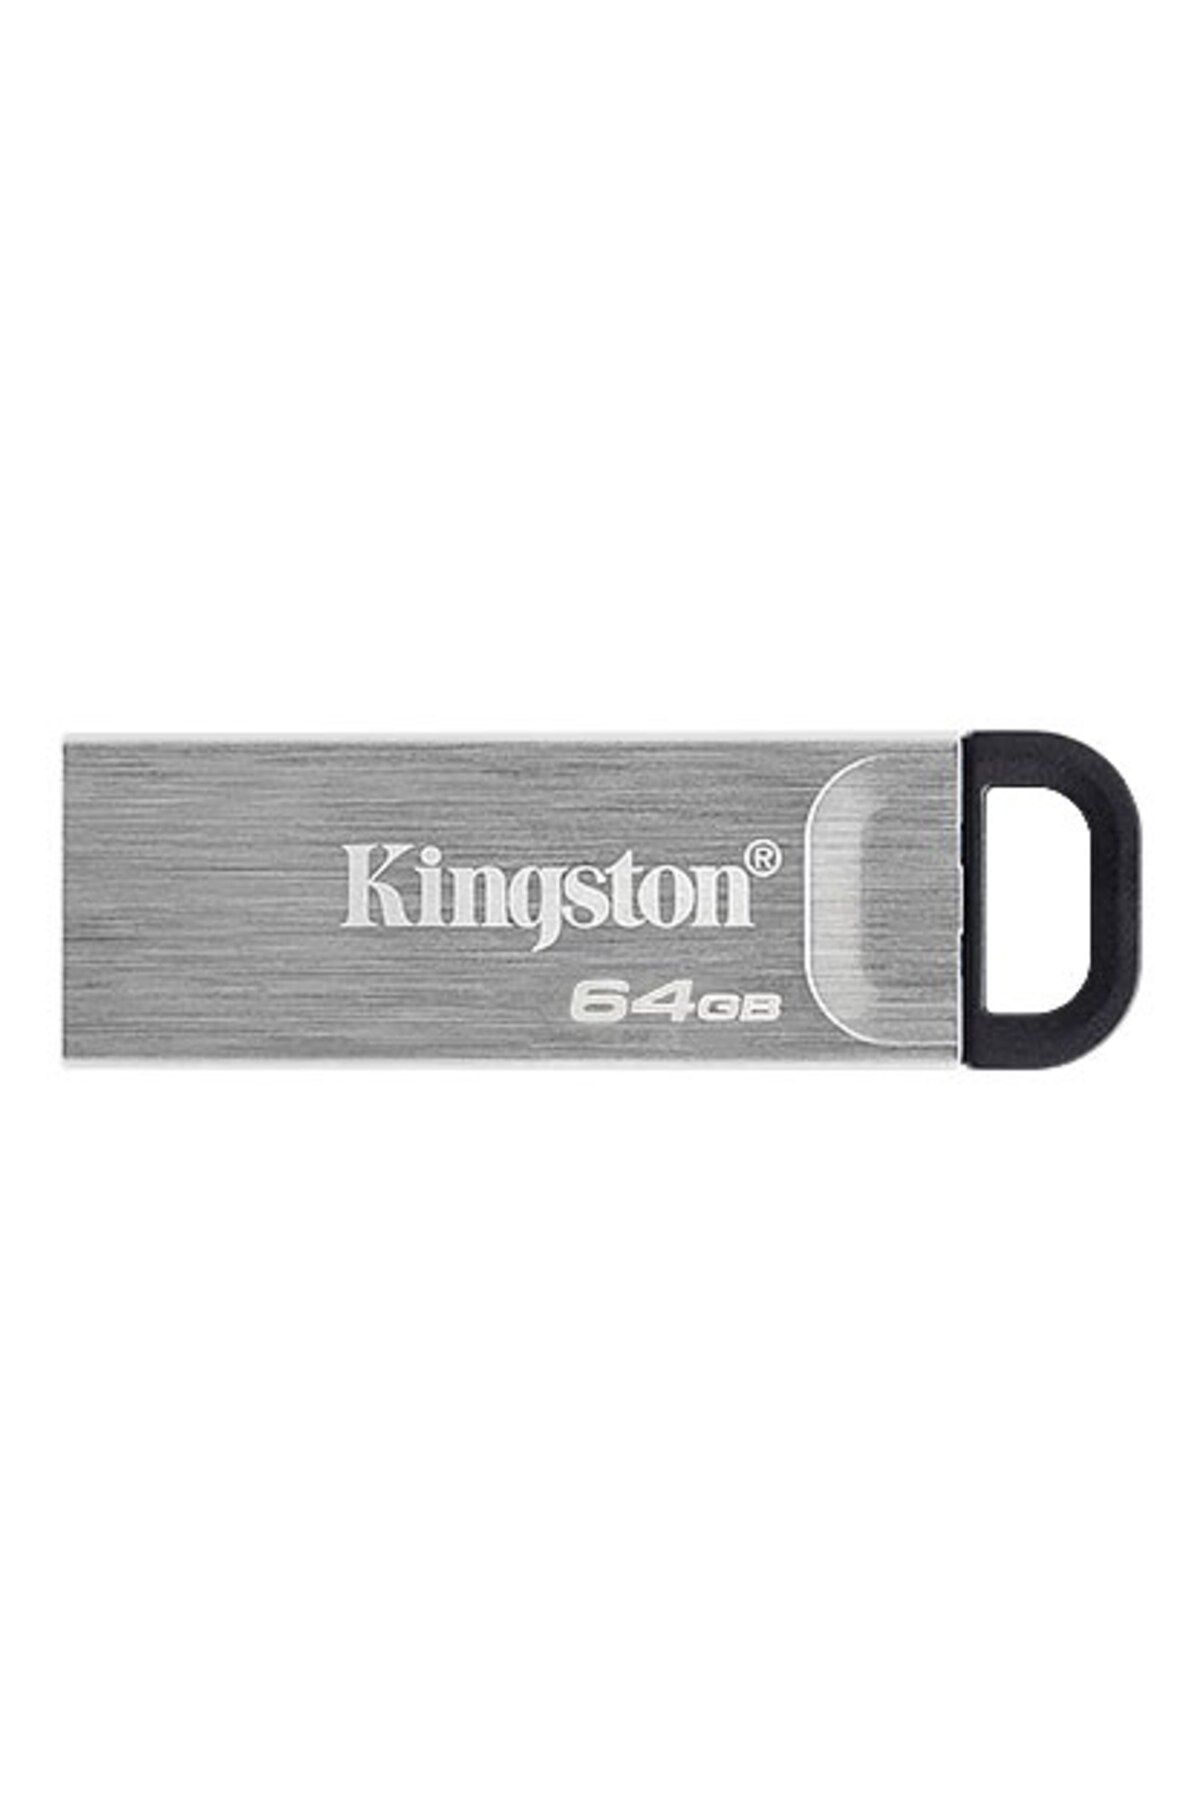 Kingston 64GB DT Kyson Usb 3.2 Gen1 DTKN/64GB